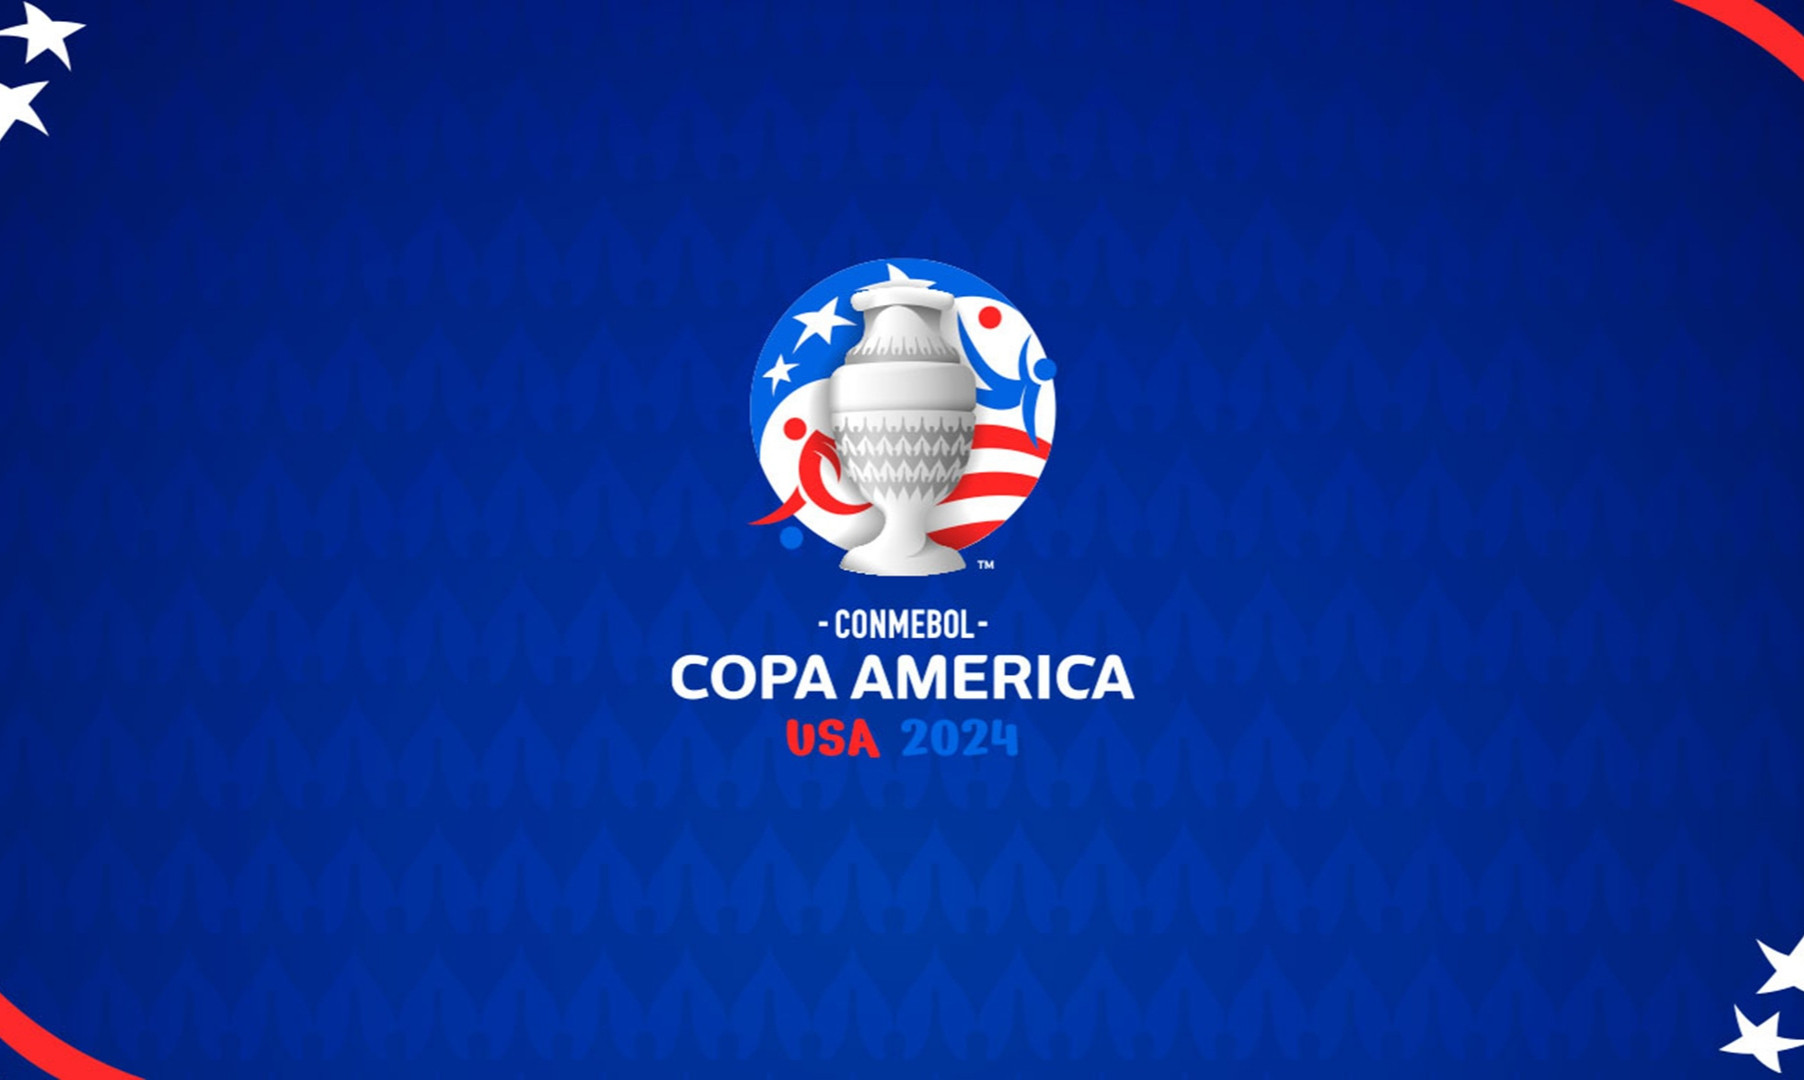 Бразилія розписала мирову з Коста-Рикою, Колумбія перемогла Парагвай в 1 турі Копа Америка